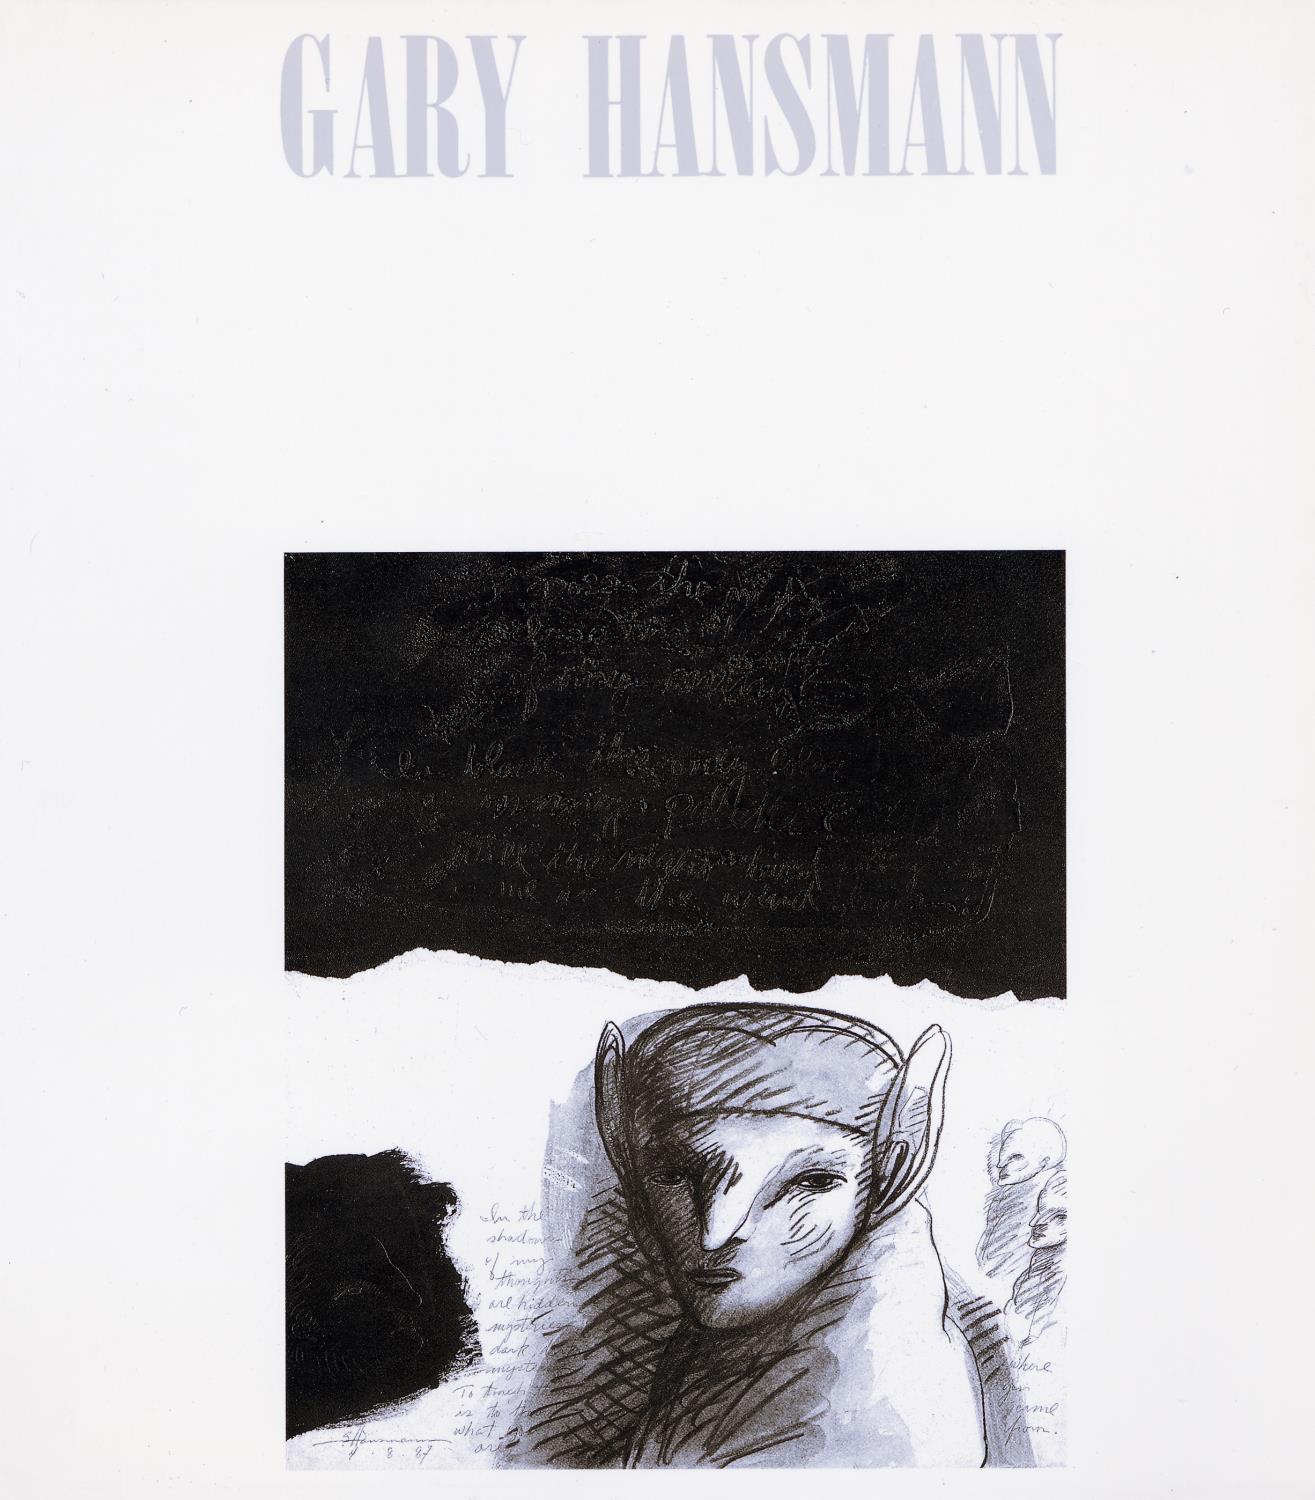 Gary Hansmann